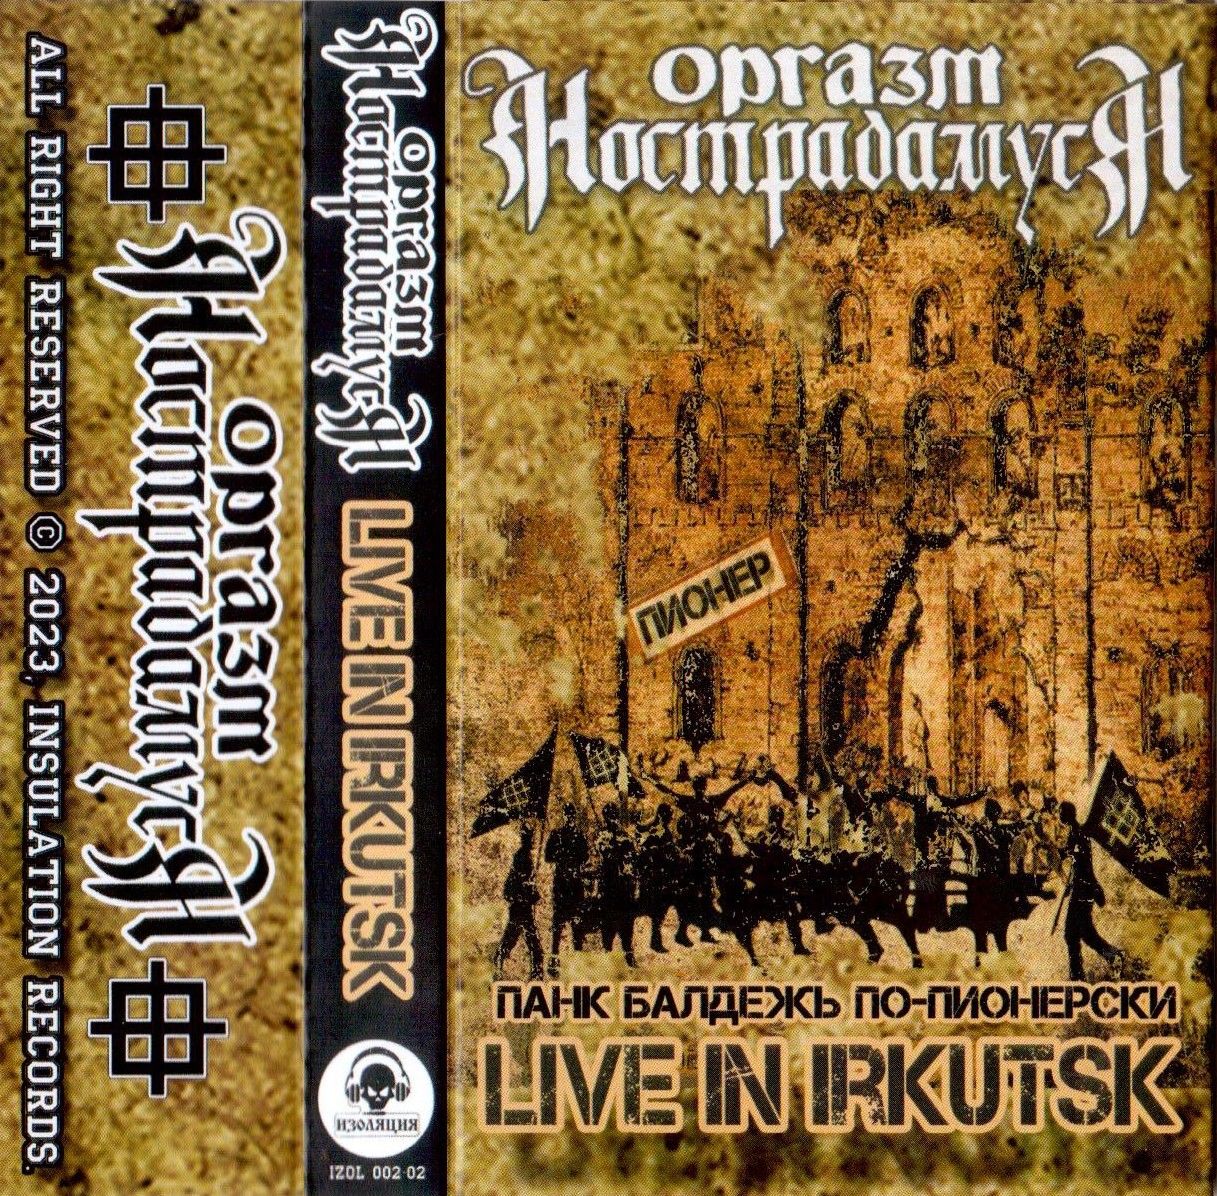 Оргазм Нострадамуса — Live In Irkutsk'98 (кассета)